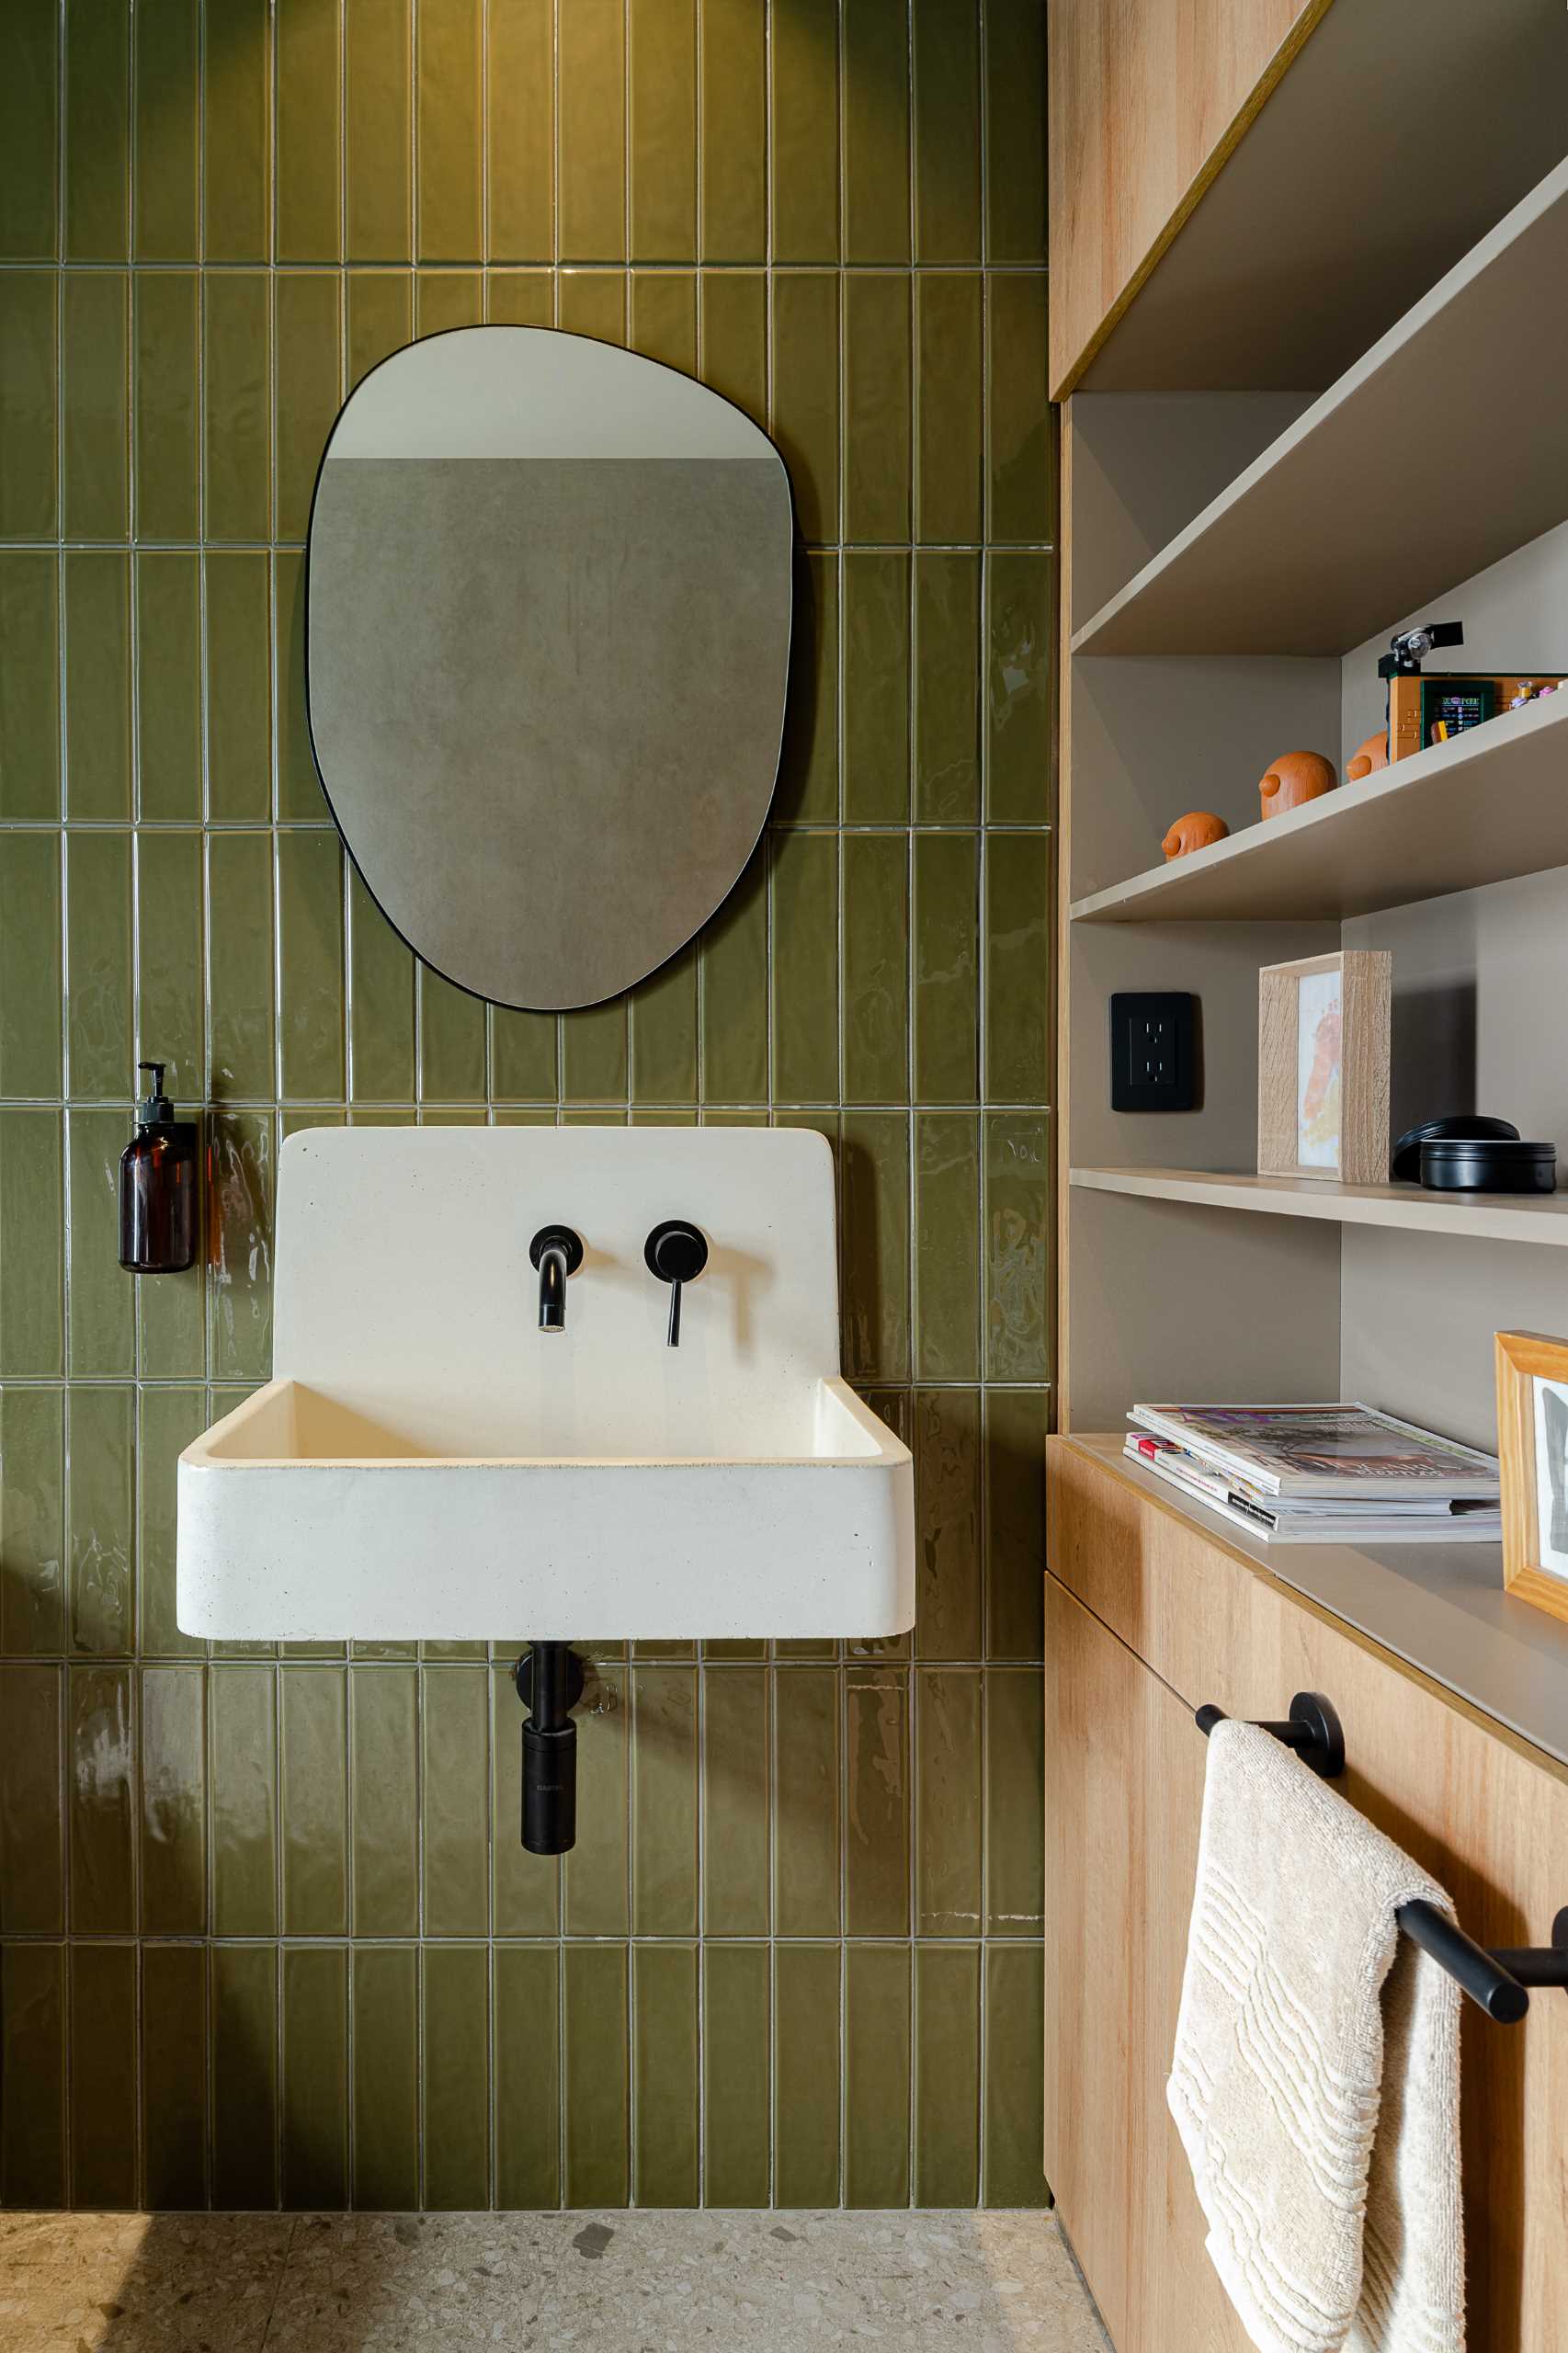 یک حمام مدرن با کاشی های دیوار سبز عمودی، یک حوضچه سفید، و یک واحد ذخیره سازی چوبی توکار با قفسه های باز.